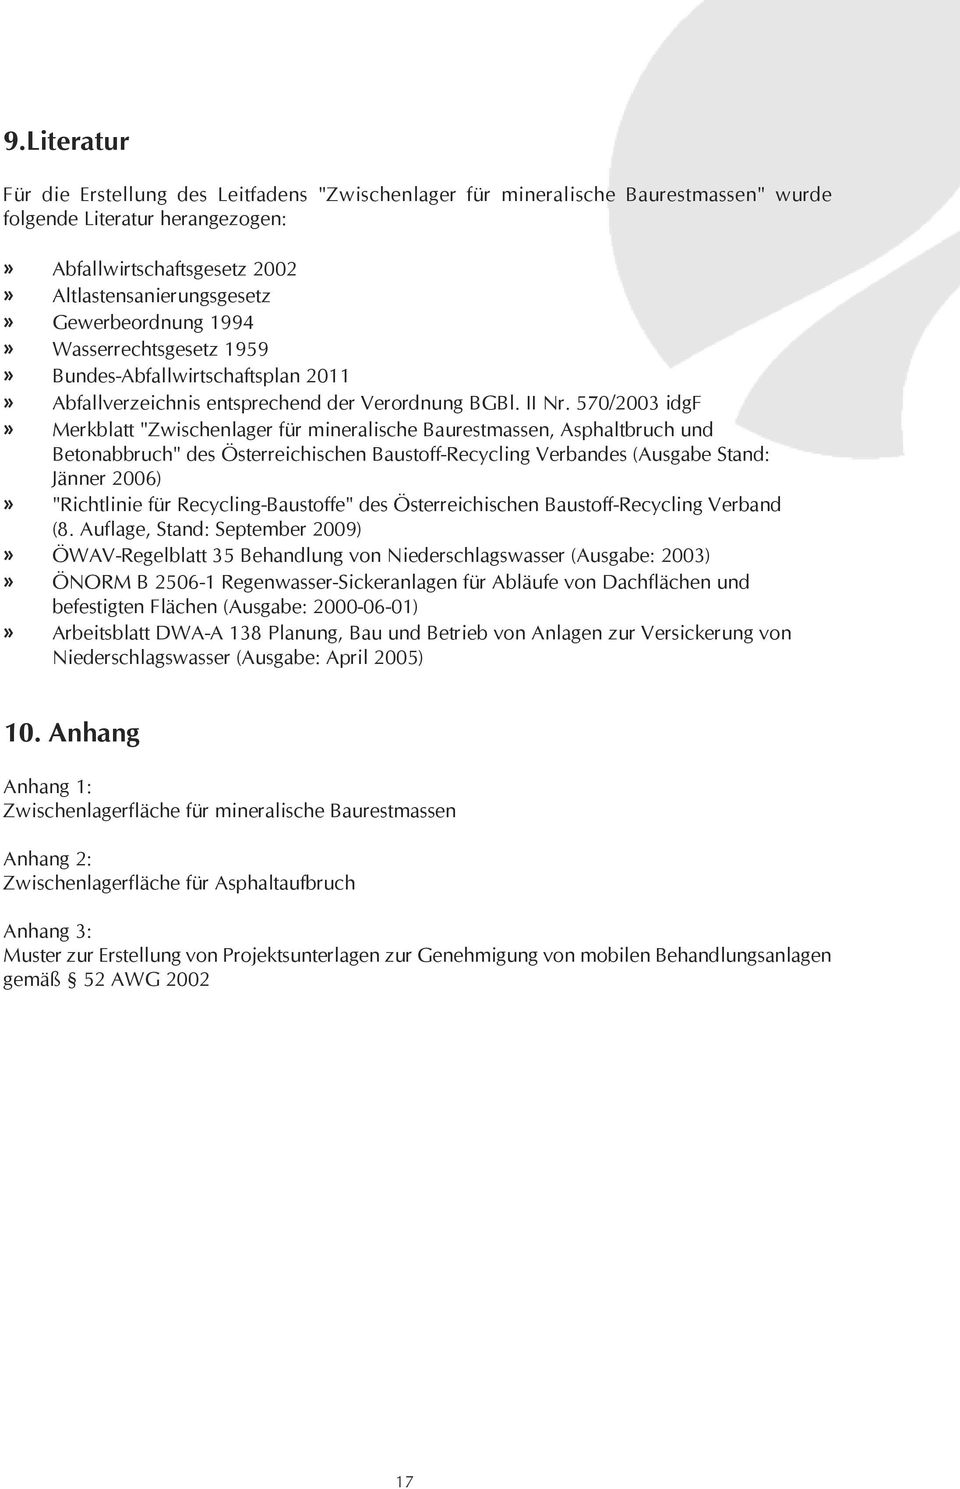 570/2003 idgf» Merkblatt "Zwischenlager für mineralische Baurestmassen, Asphaltbruch und Betonabbruch" des Österreichischen Baustoff-Recycling Verbandes (Ausgabe Stand: Jänner 2006)» "Richtlinie für